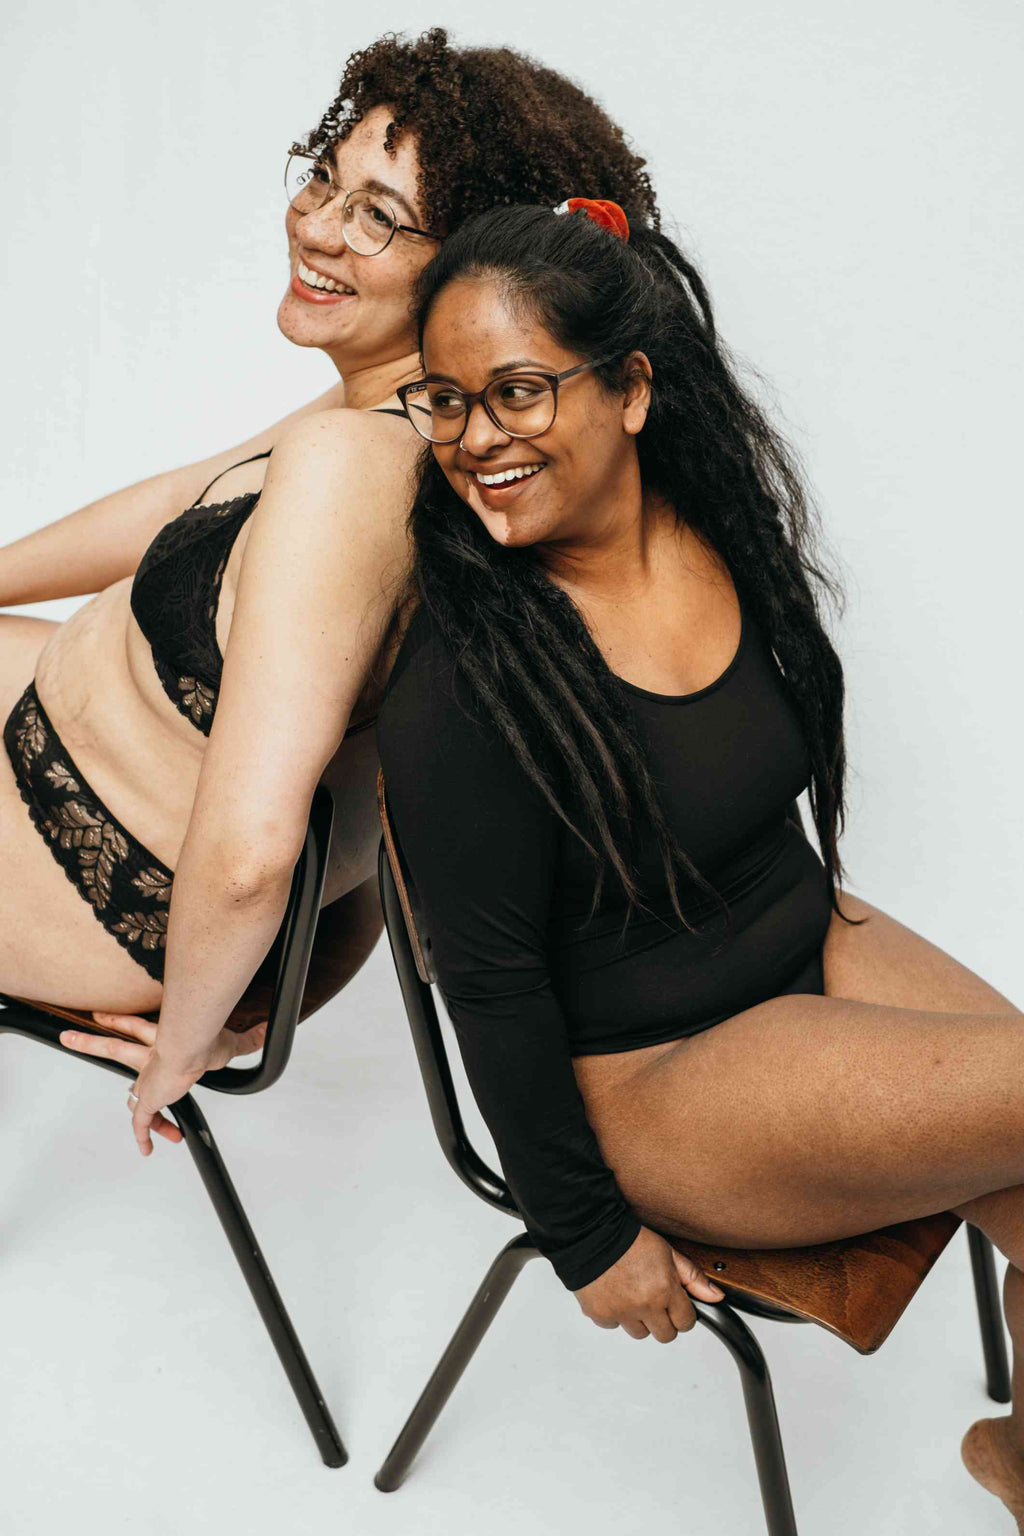 Foto zeigt zwei unserer Models, sie sitzen Rücken an Rücken und lachen gemeinsam.